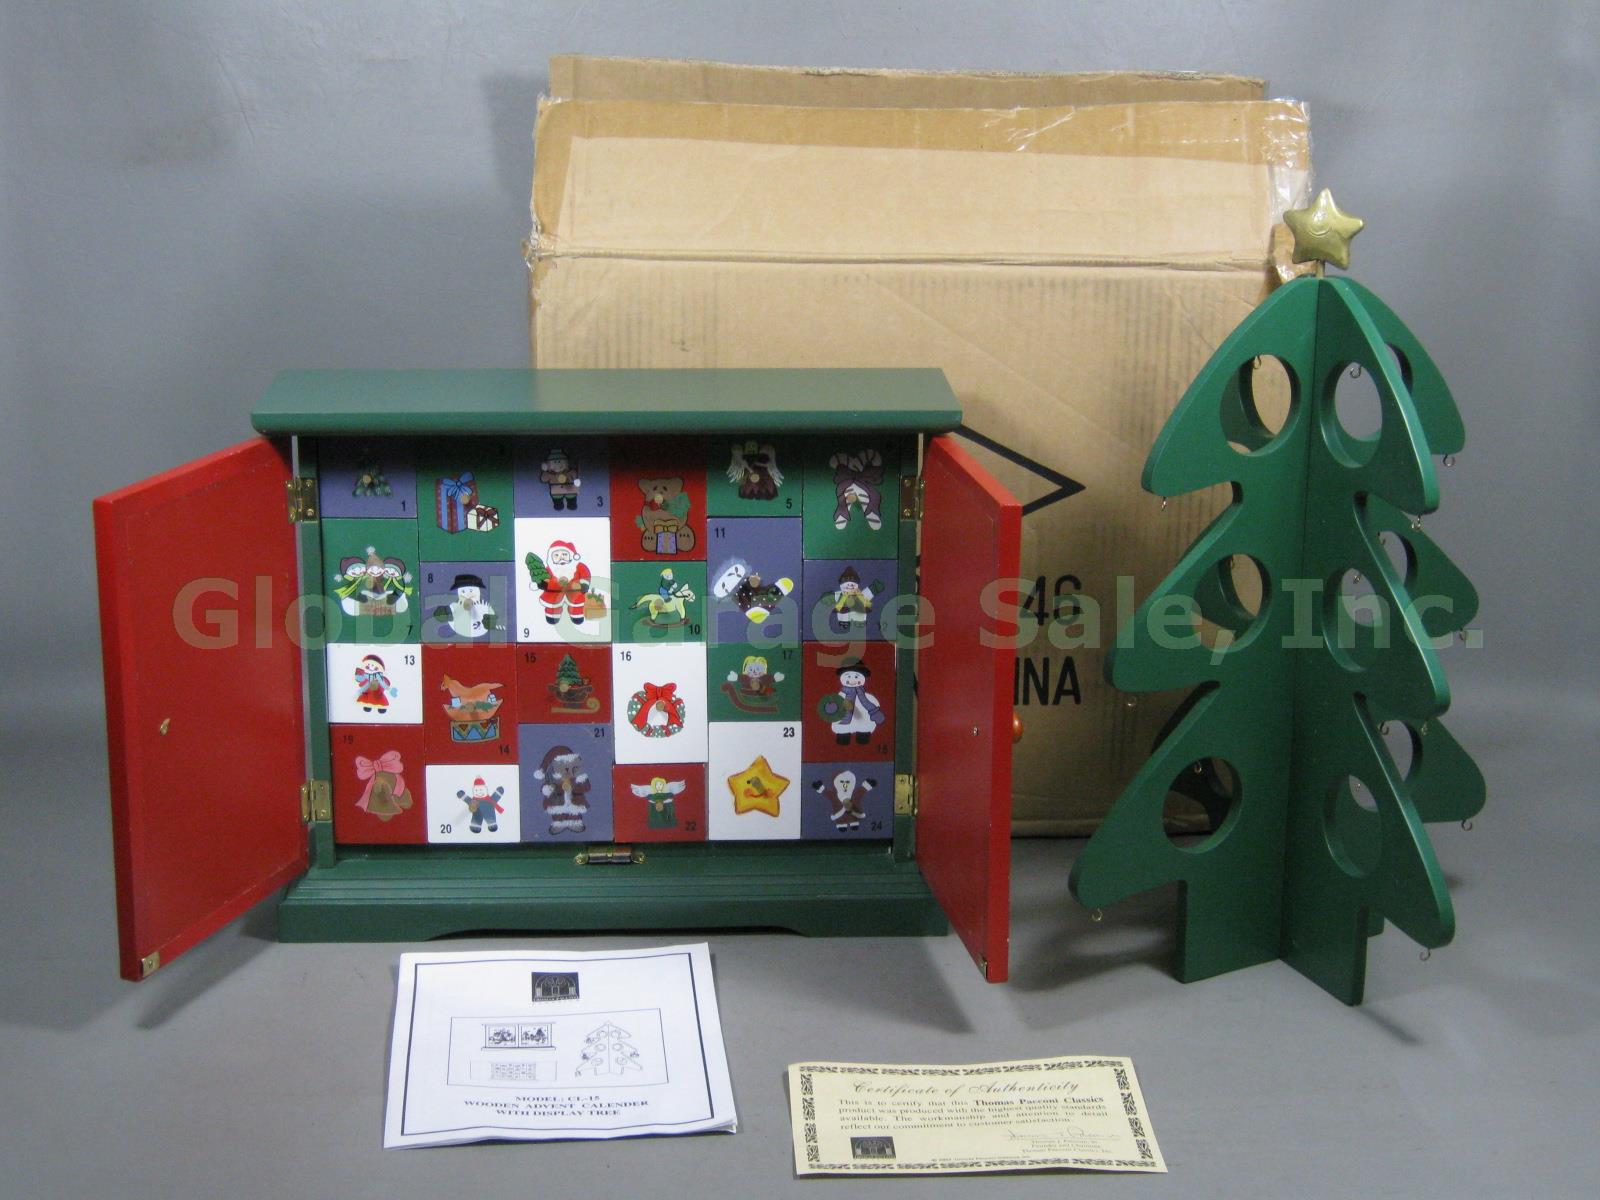 Thomas Pacconi Classics Wooden Advent Calendar W/ Xmas Tree Ornaments Box COA NR